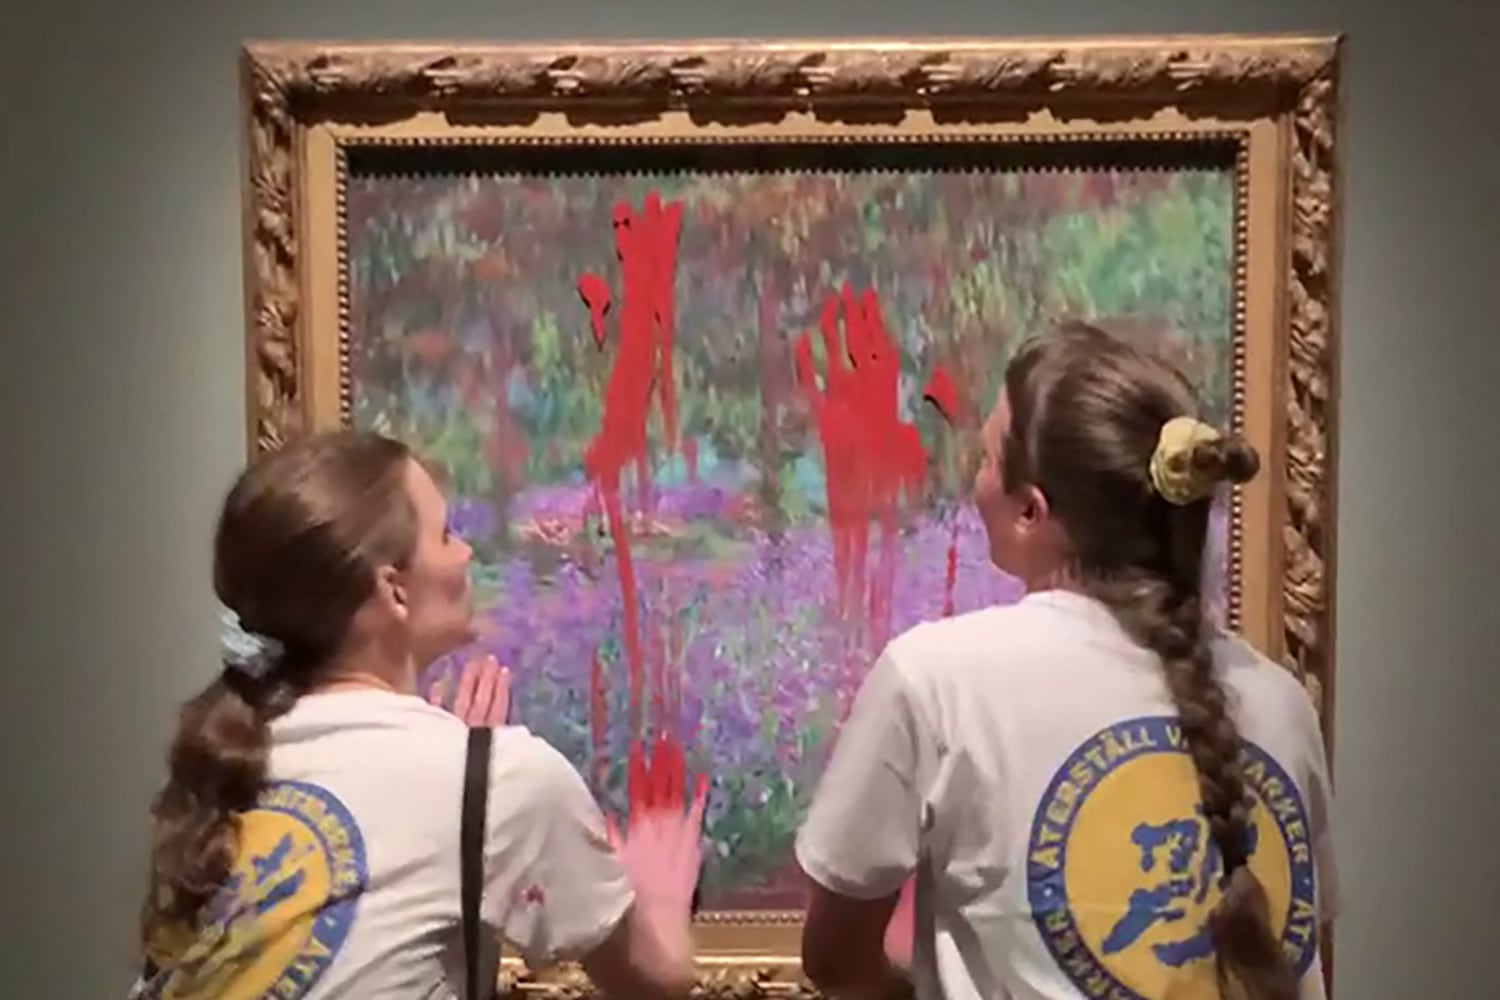 Activistas lanzan pintura roja a obra de Claude Monet